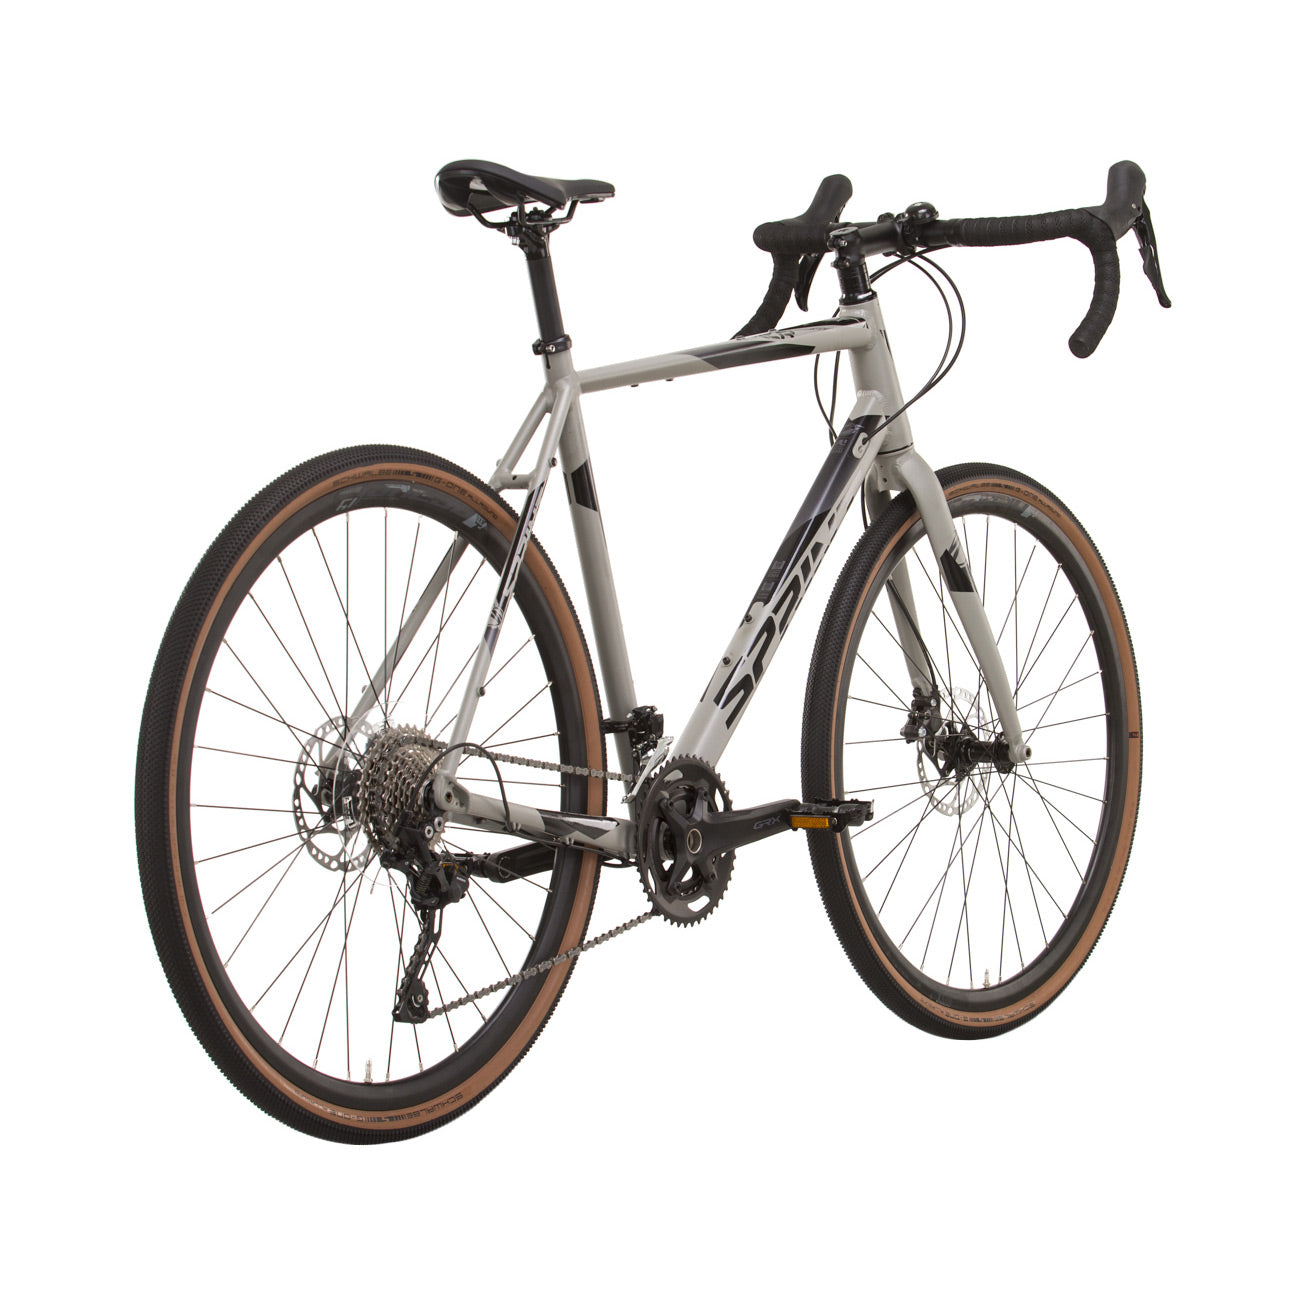 herren-gravel-bike-fahrrad-whister-shimano-grx-400-2-9-gang-52-56-cm-schwarz-grau-9